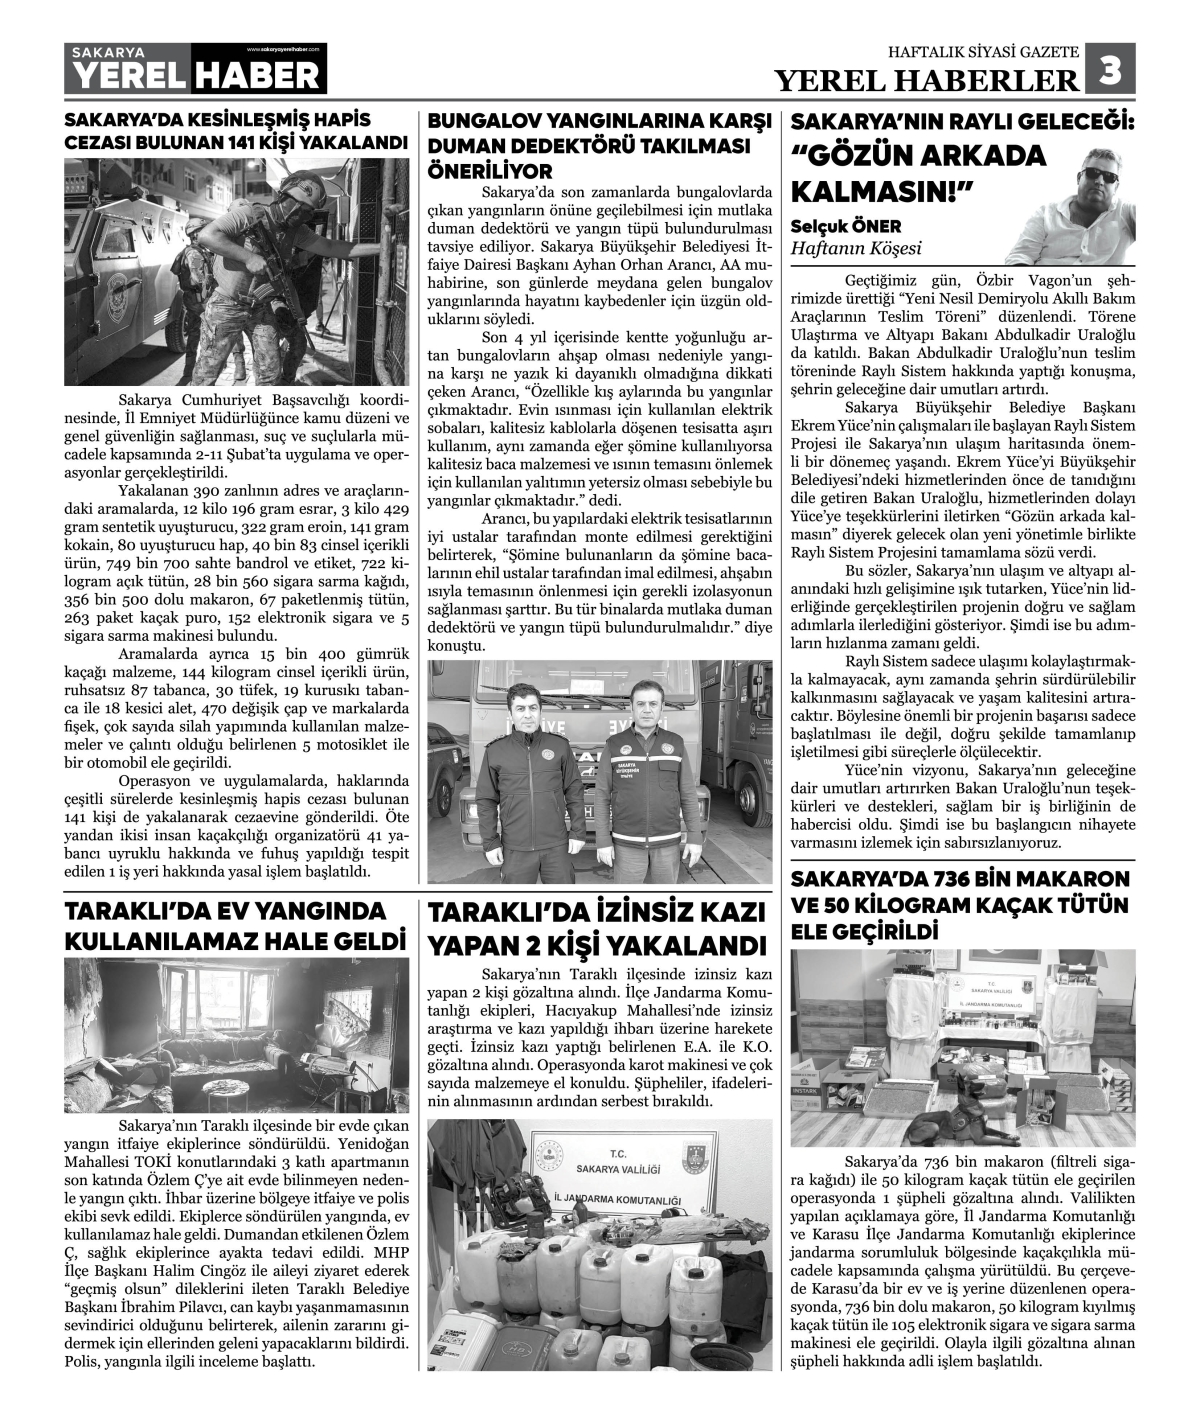 Sakarya Yerel Haber Gazetesi 42. Sayısı Çıktı